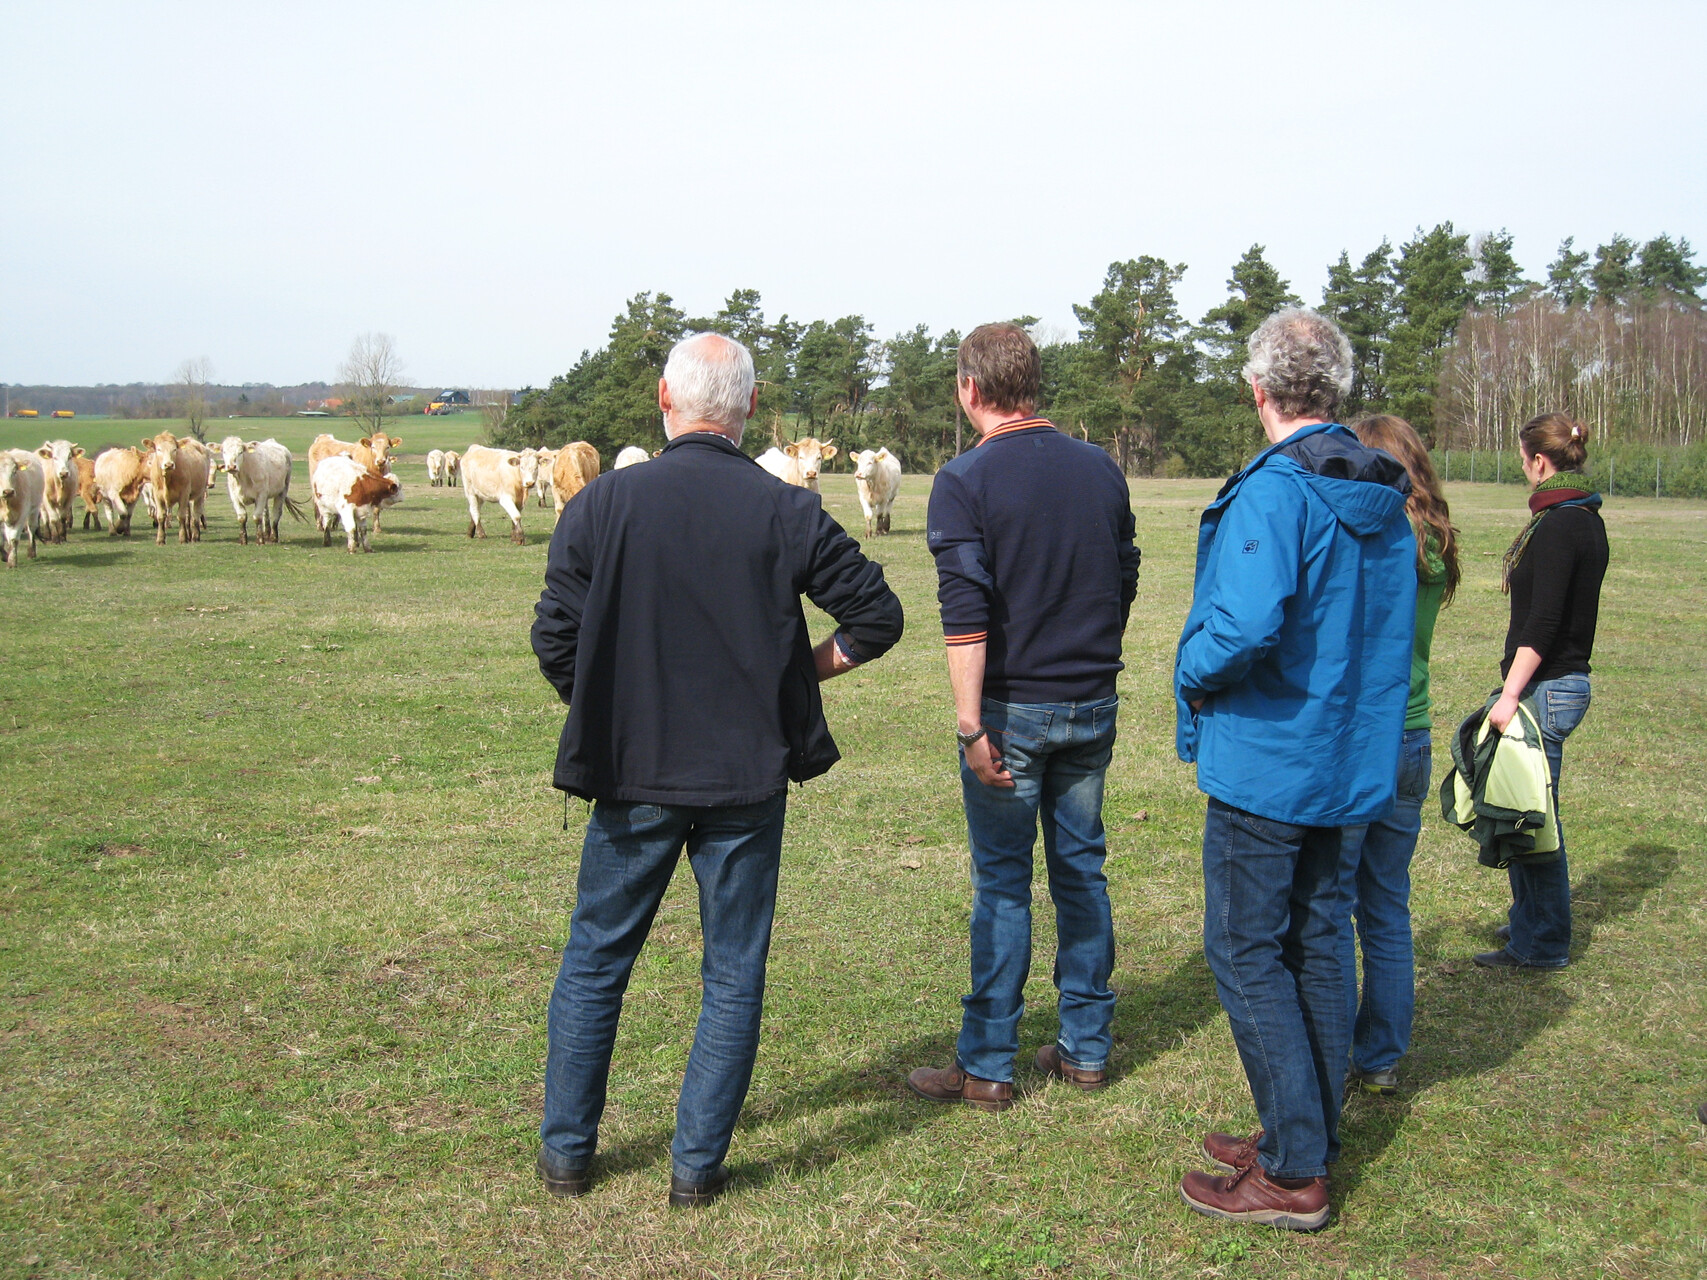 Foto: Besichtigung des Rinderzuchtbetriebes Bobzin in Woez. Fotoautorin: Corina Müller